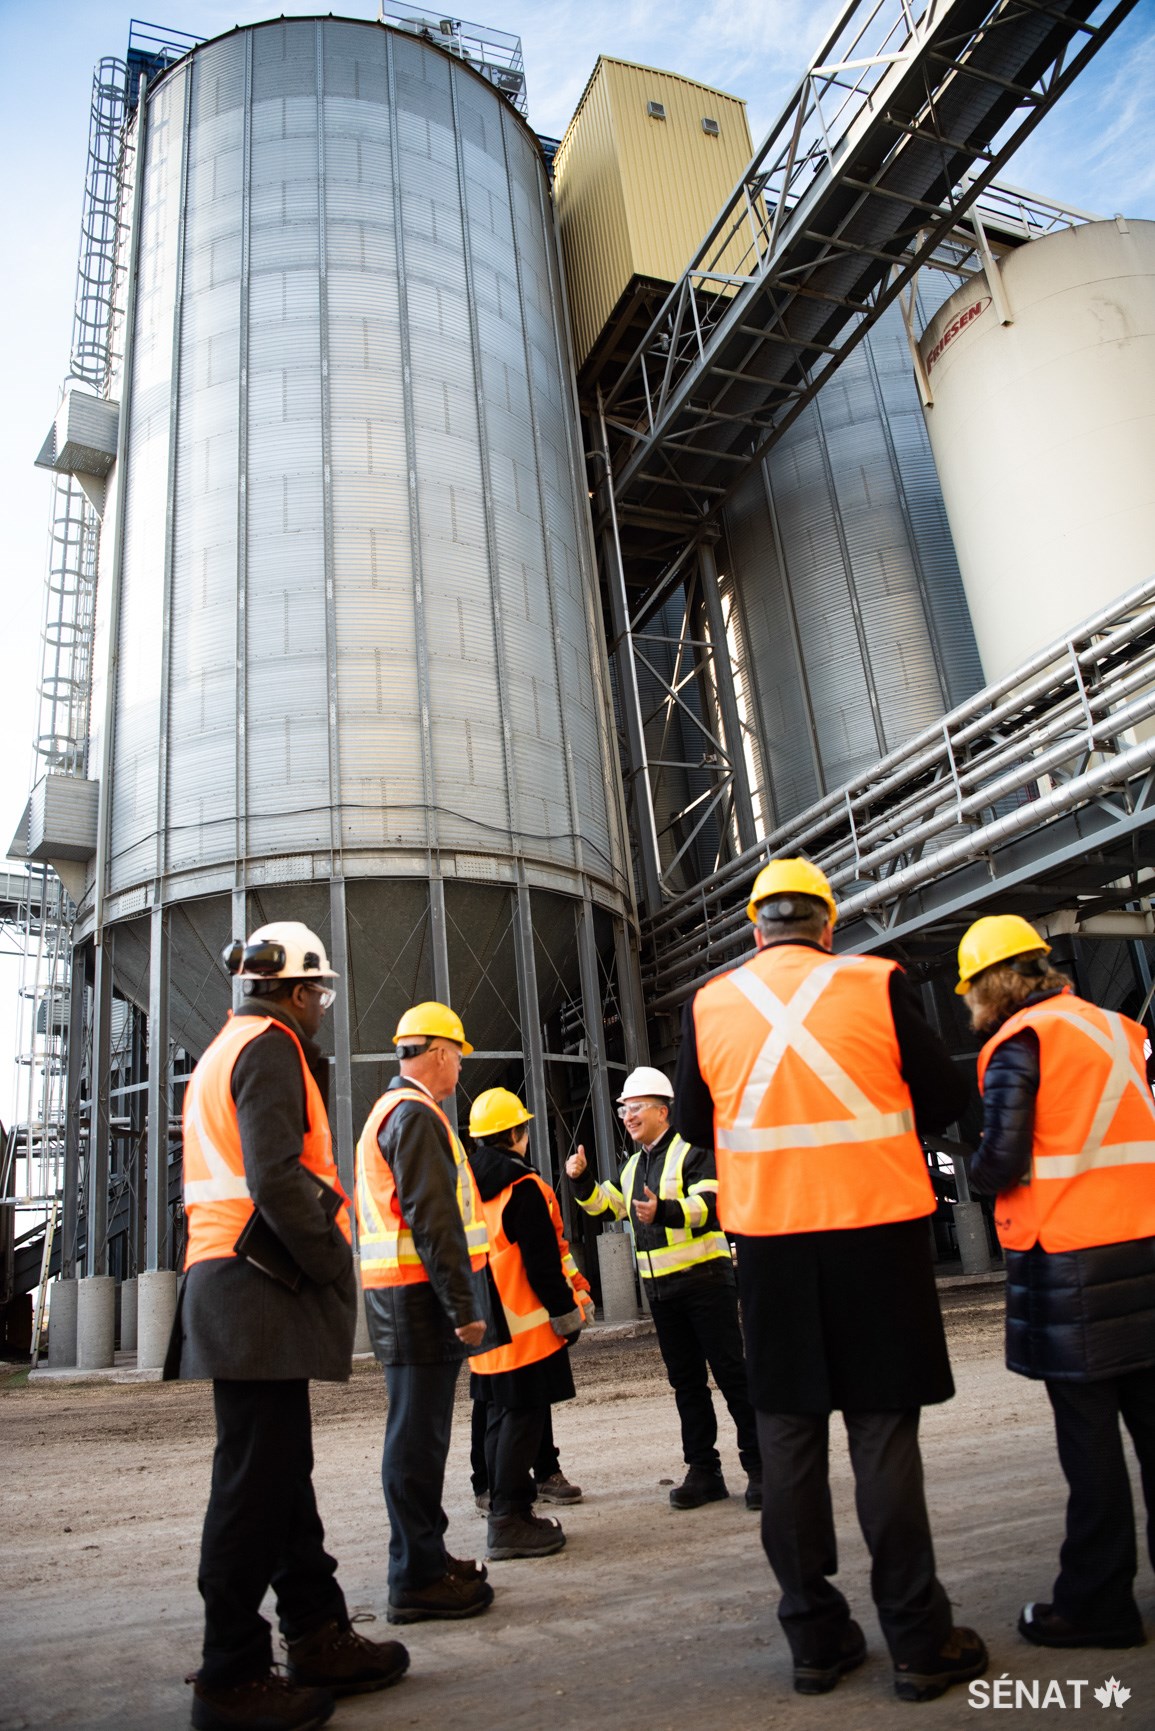 Le comité visite l’usine Viterra qui produit de l’huile de canola. Ici, il prend connaissance des défis reliés au développement durable dans une industrie énergivore.